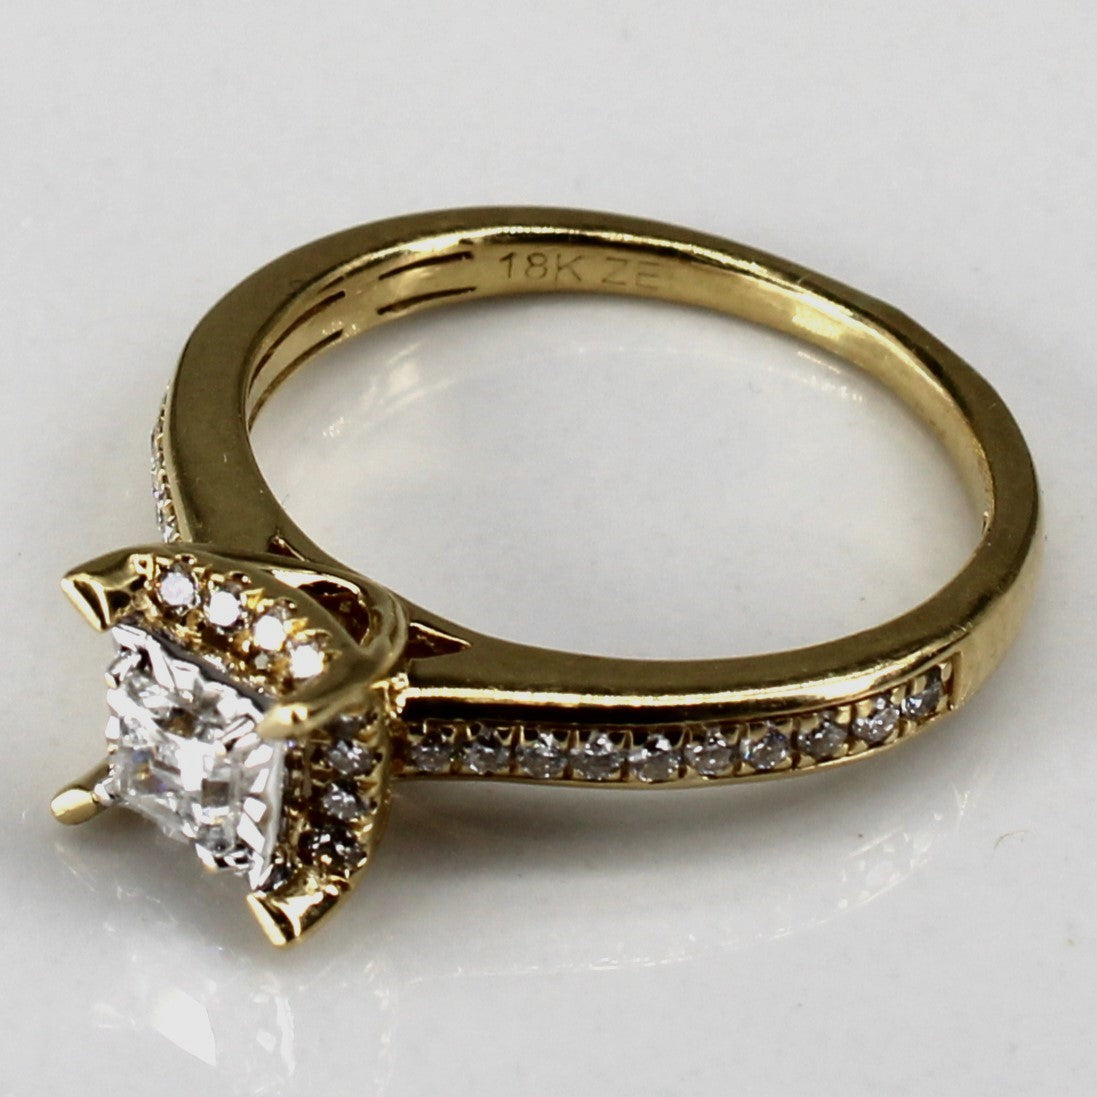 Halo Style Princess Diamond Ring | 0.38ctw | SZ 5.75 |